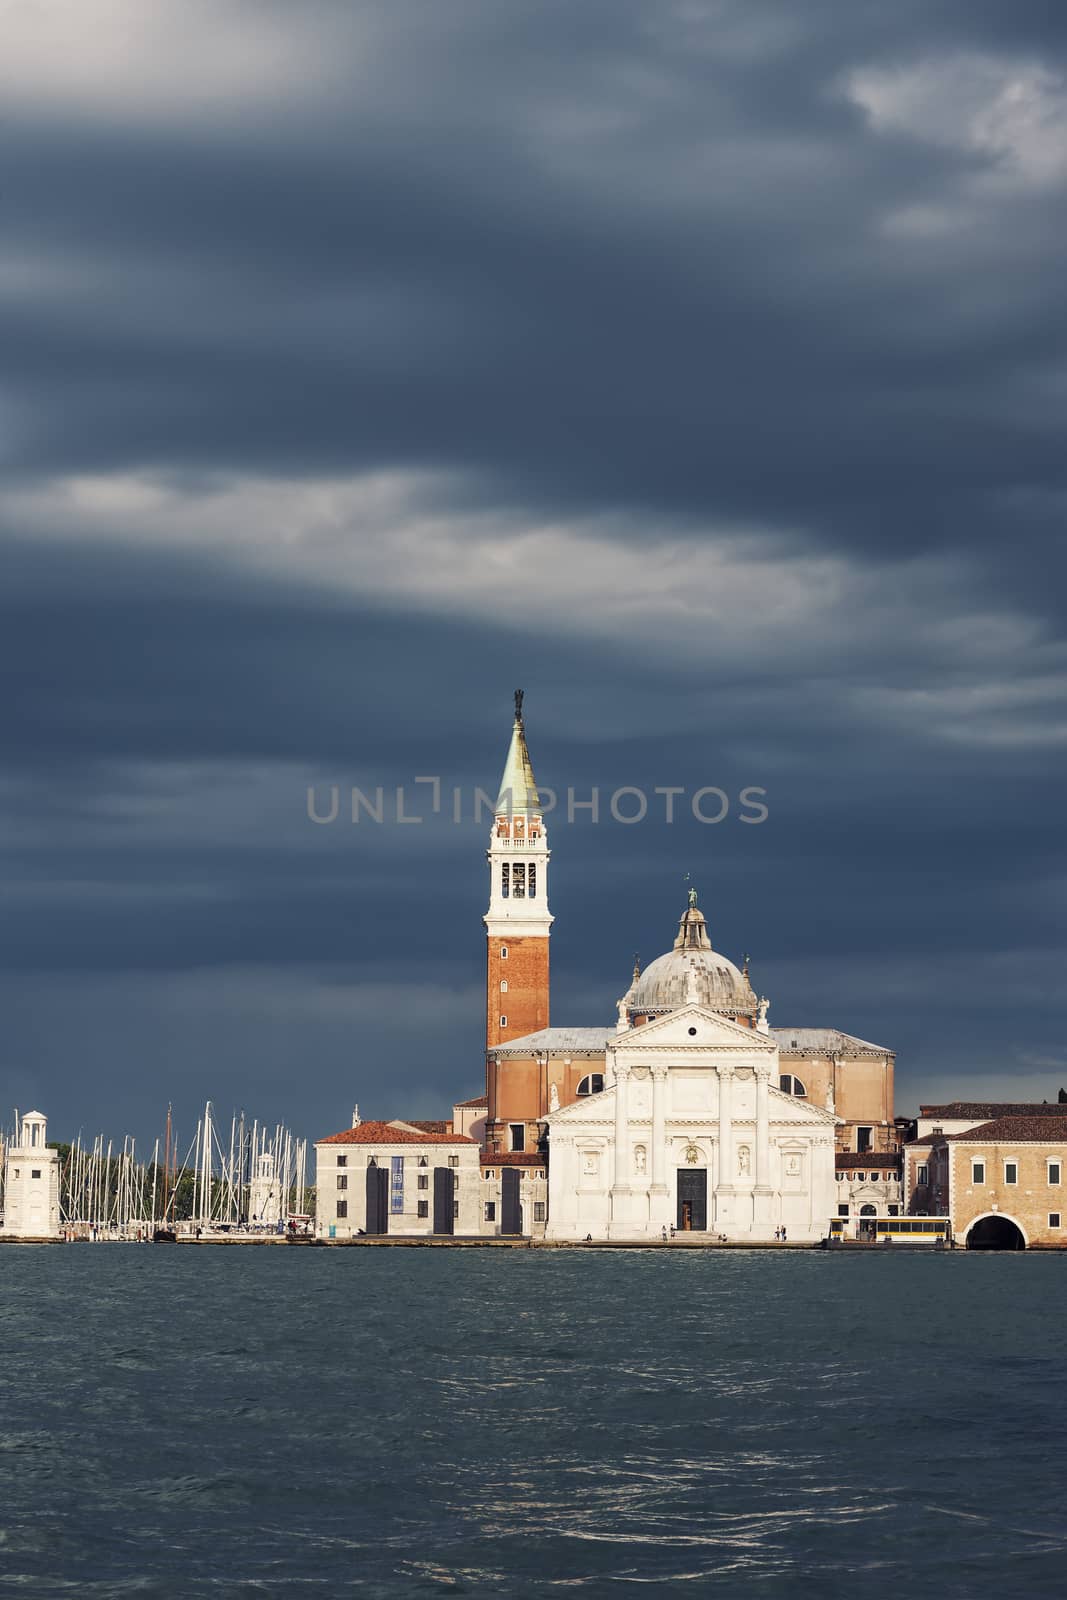 Church of San Giorgio Maggiore with clouds in Venice, Italy.